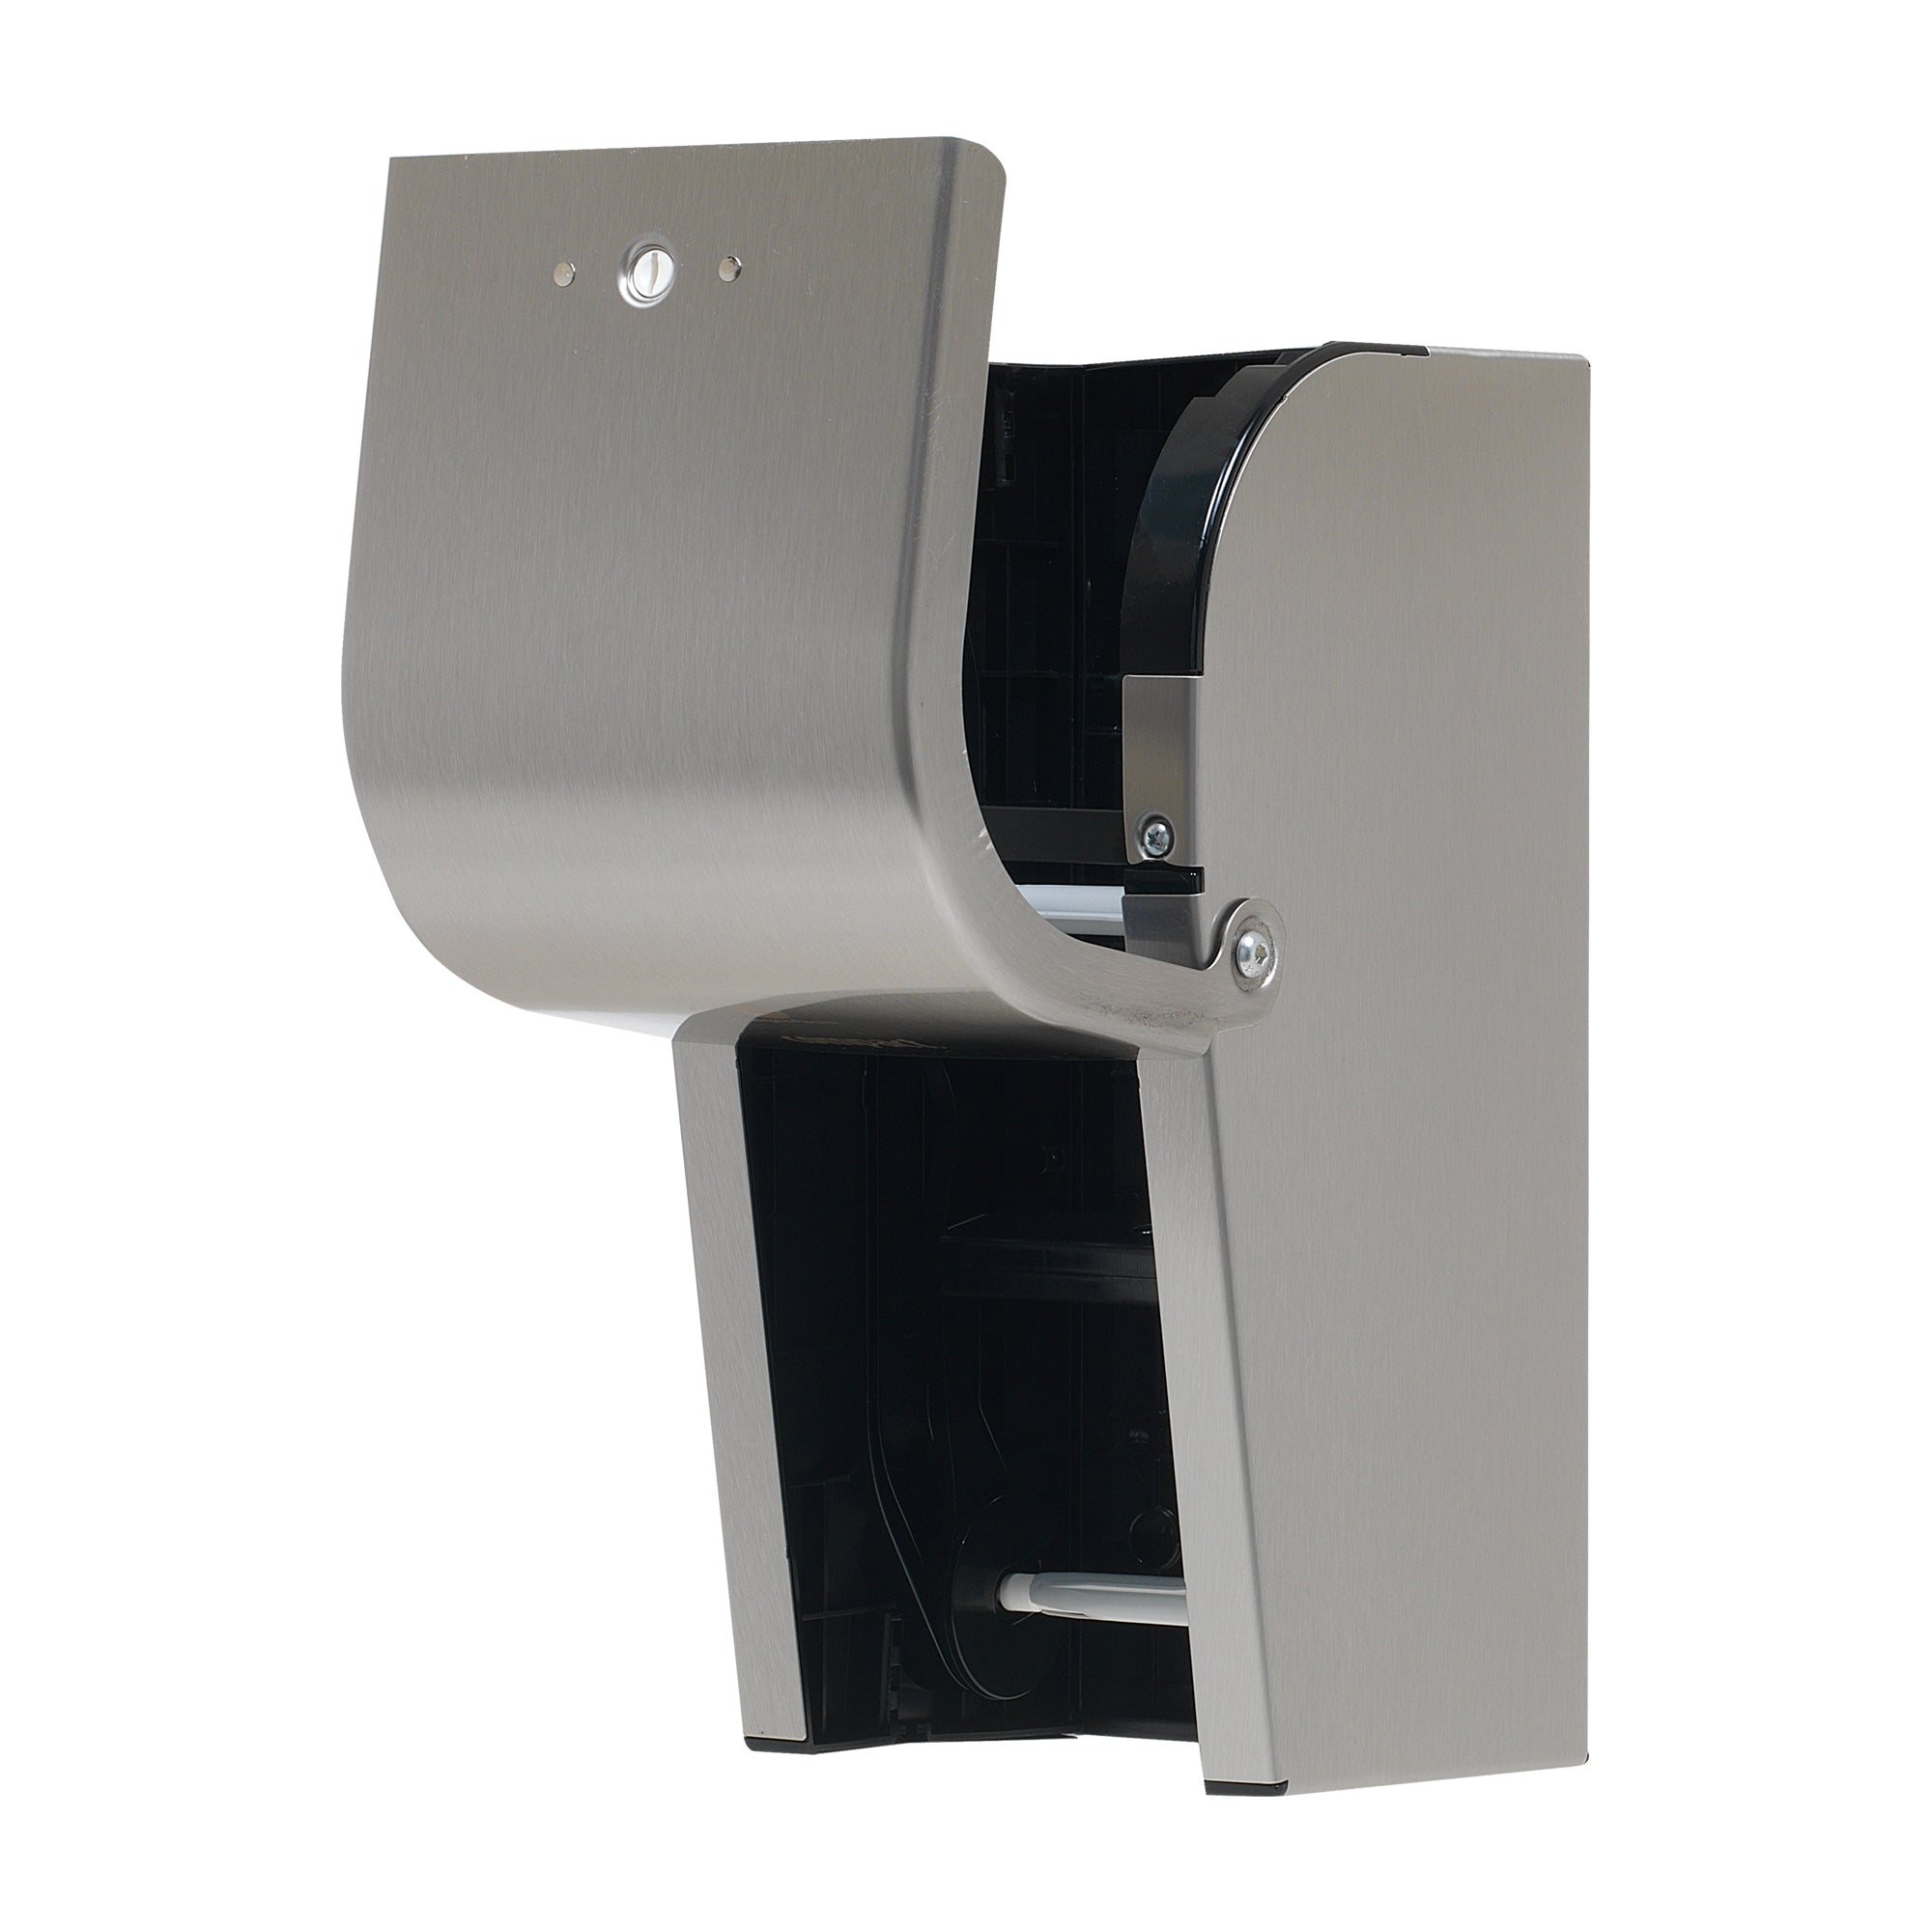 מתקן נייר טואלט בעל קיבולת גבוהה בעל 2 גלילים אנכיים ללא ליבות Compact® מבית GP PRO (ג'ורג'יה פסיפיק), נירוסטה, מתקן אחד